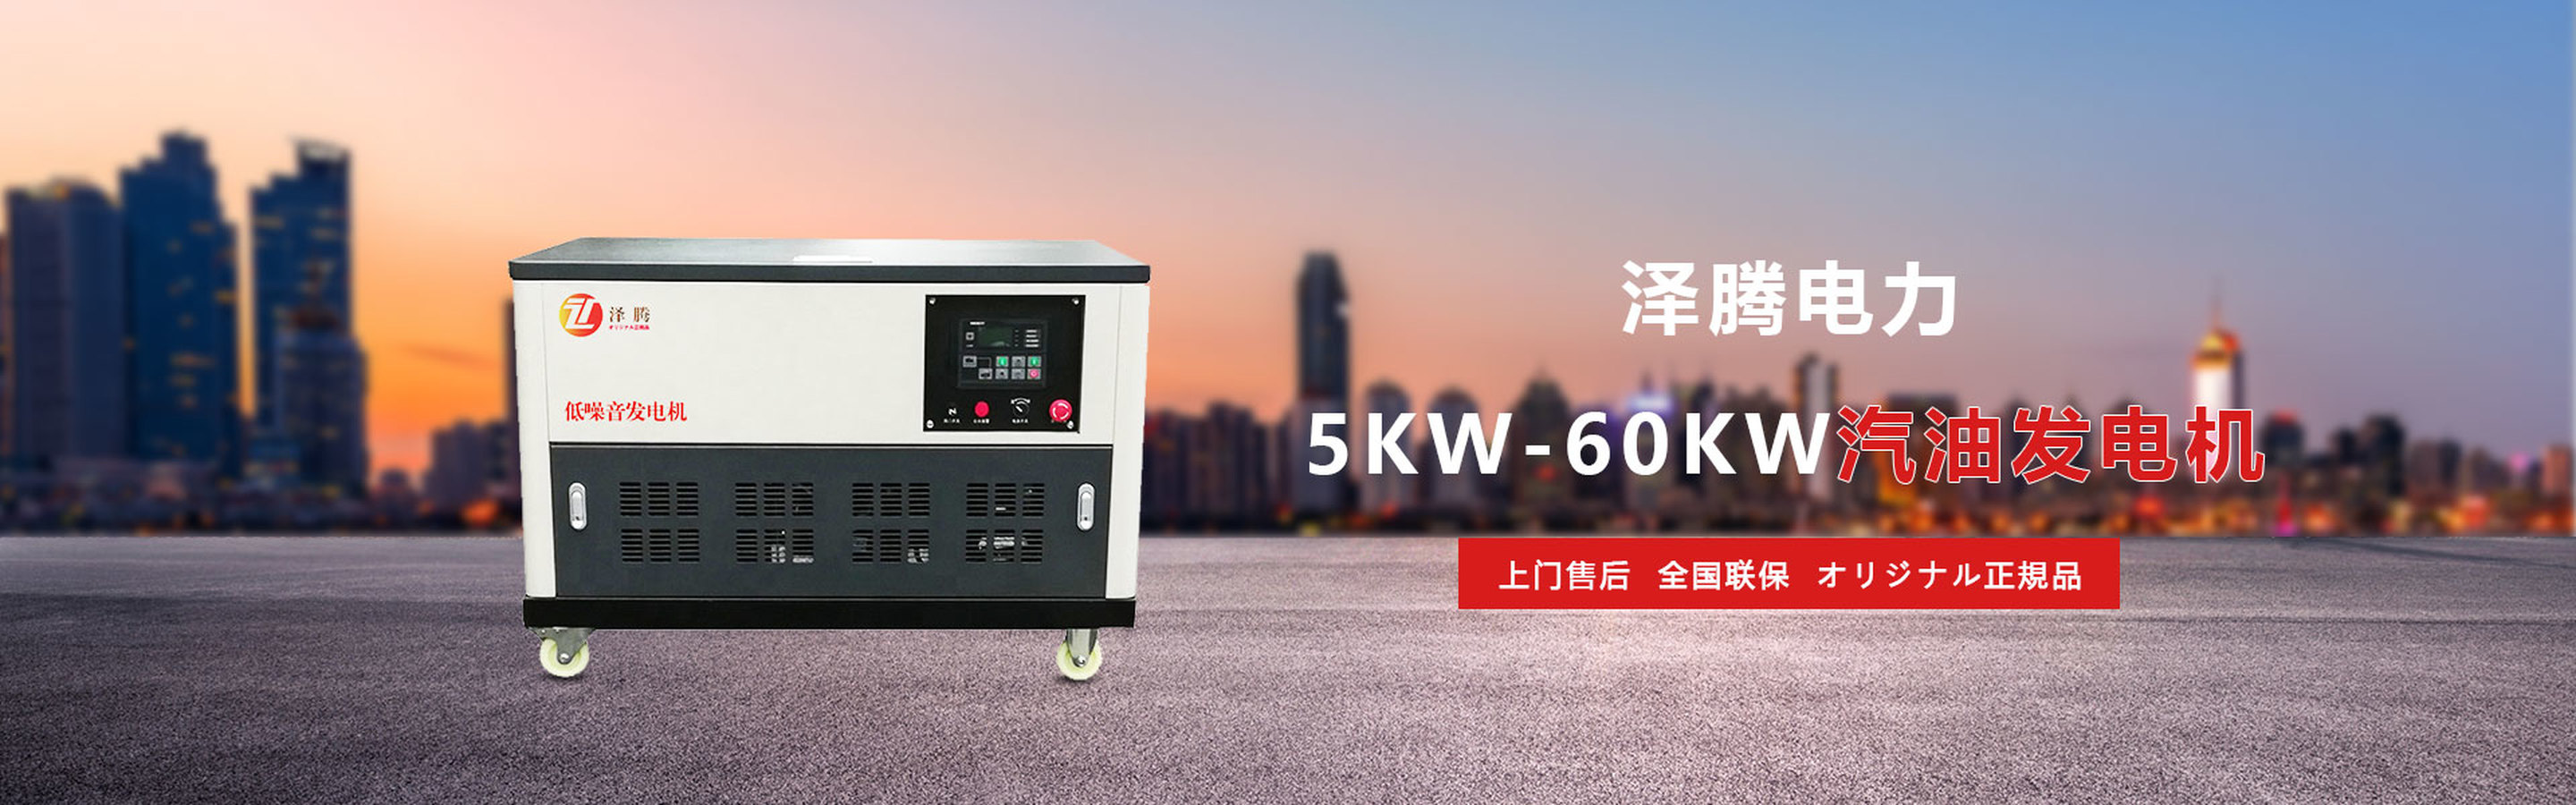 5KW-2000KW柴油发电机_20210524_171036847